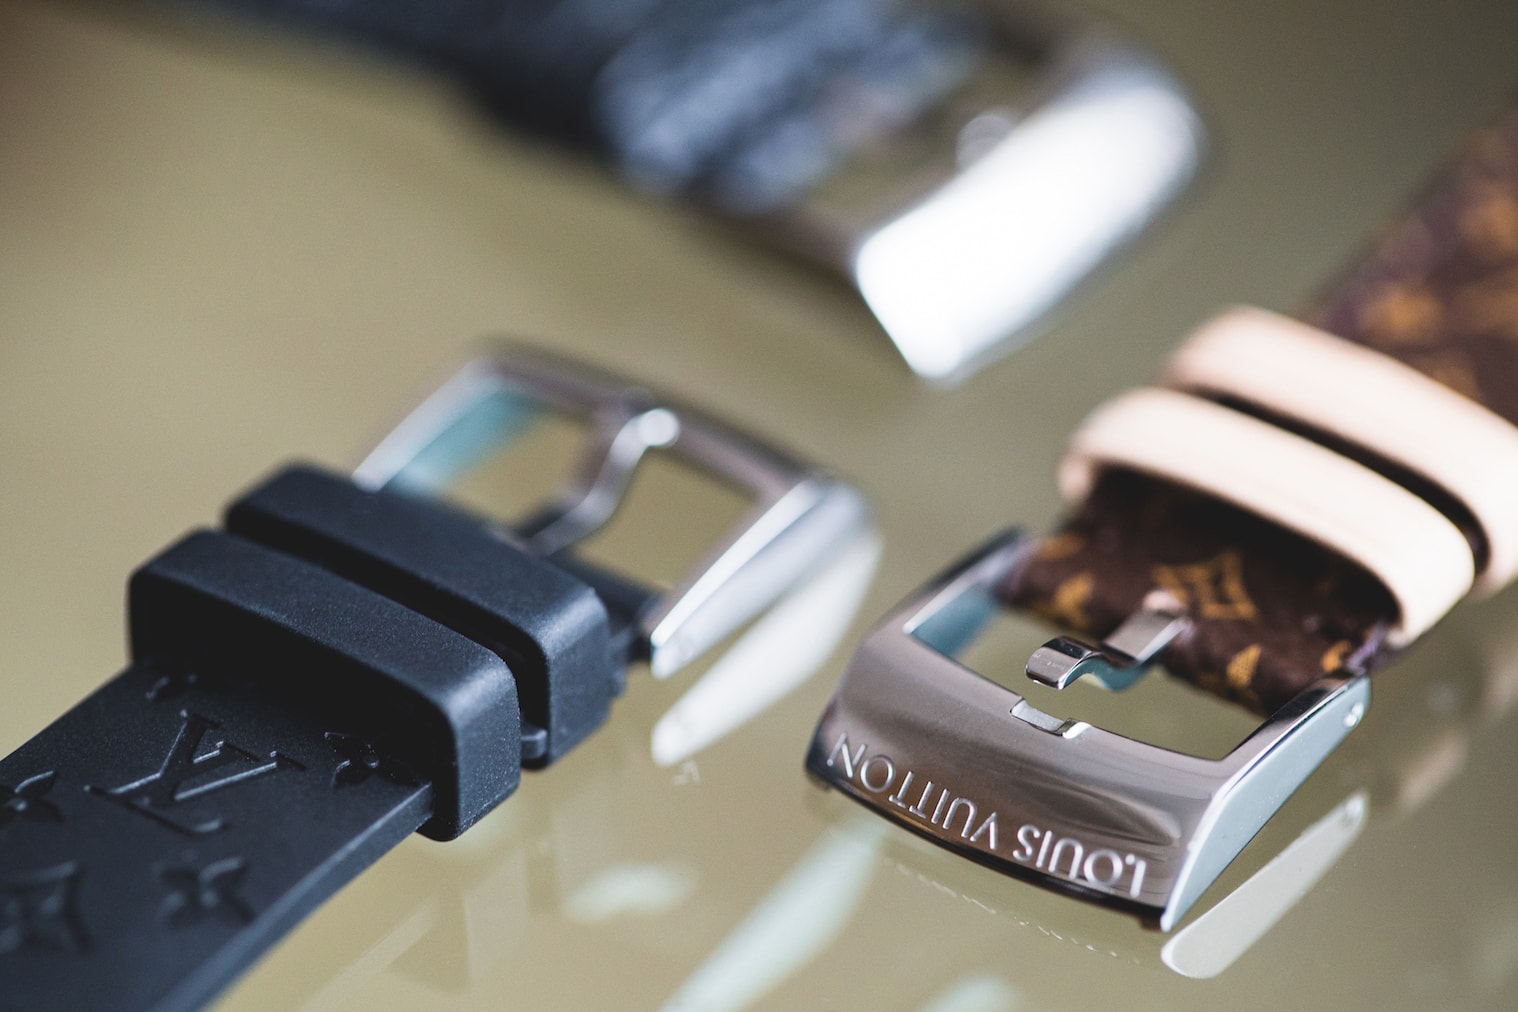 Louis Vuitton 為智能手錶 Tambour Horizon 推出全新 CNY 錶盤設計